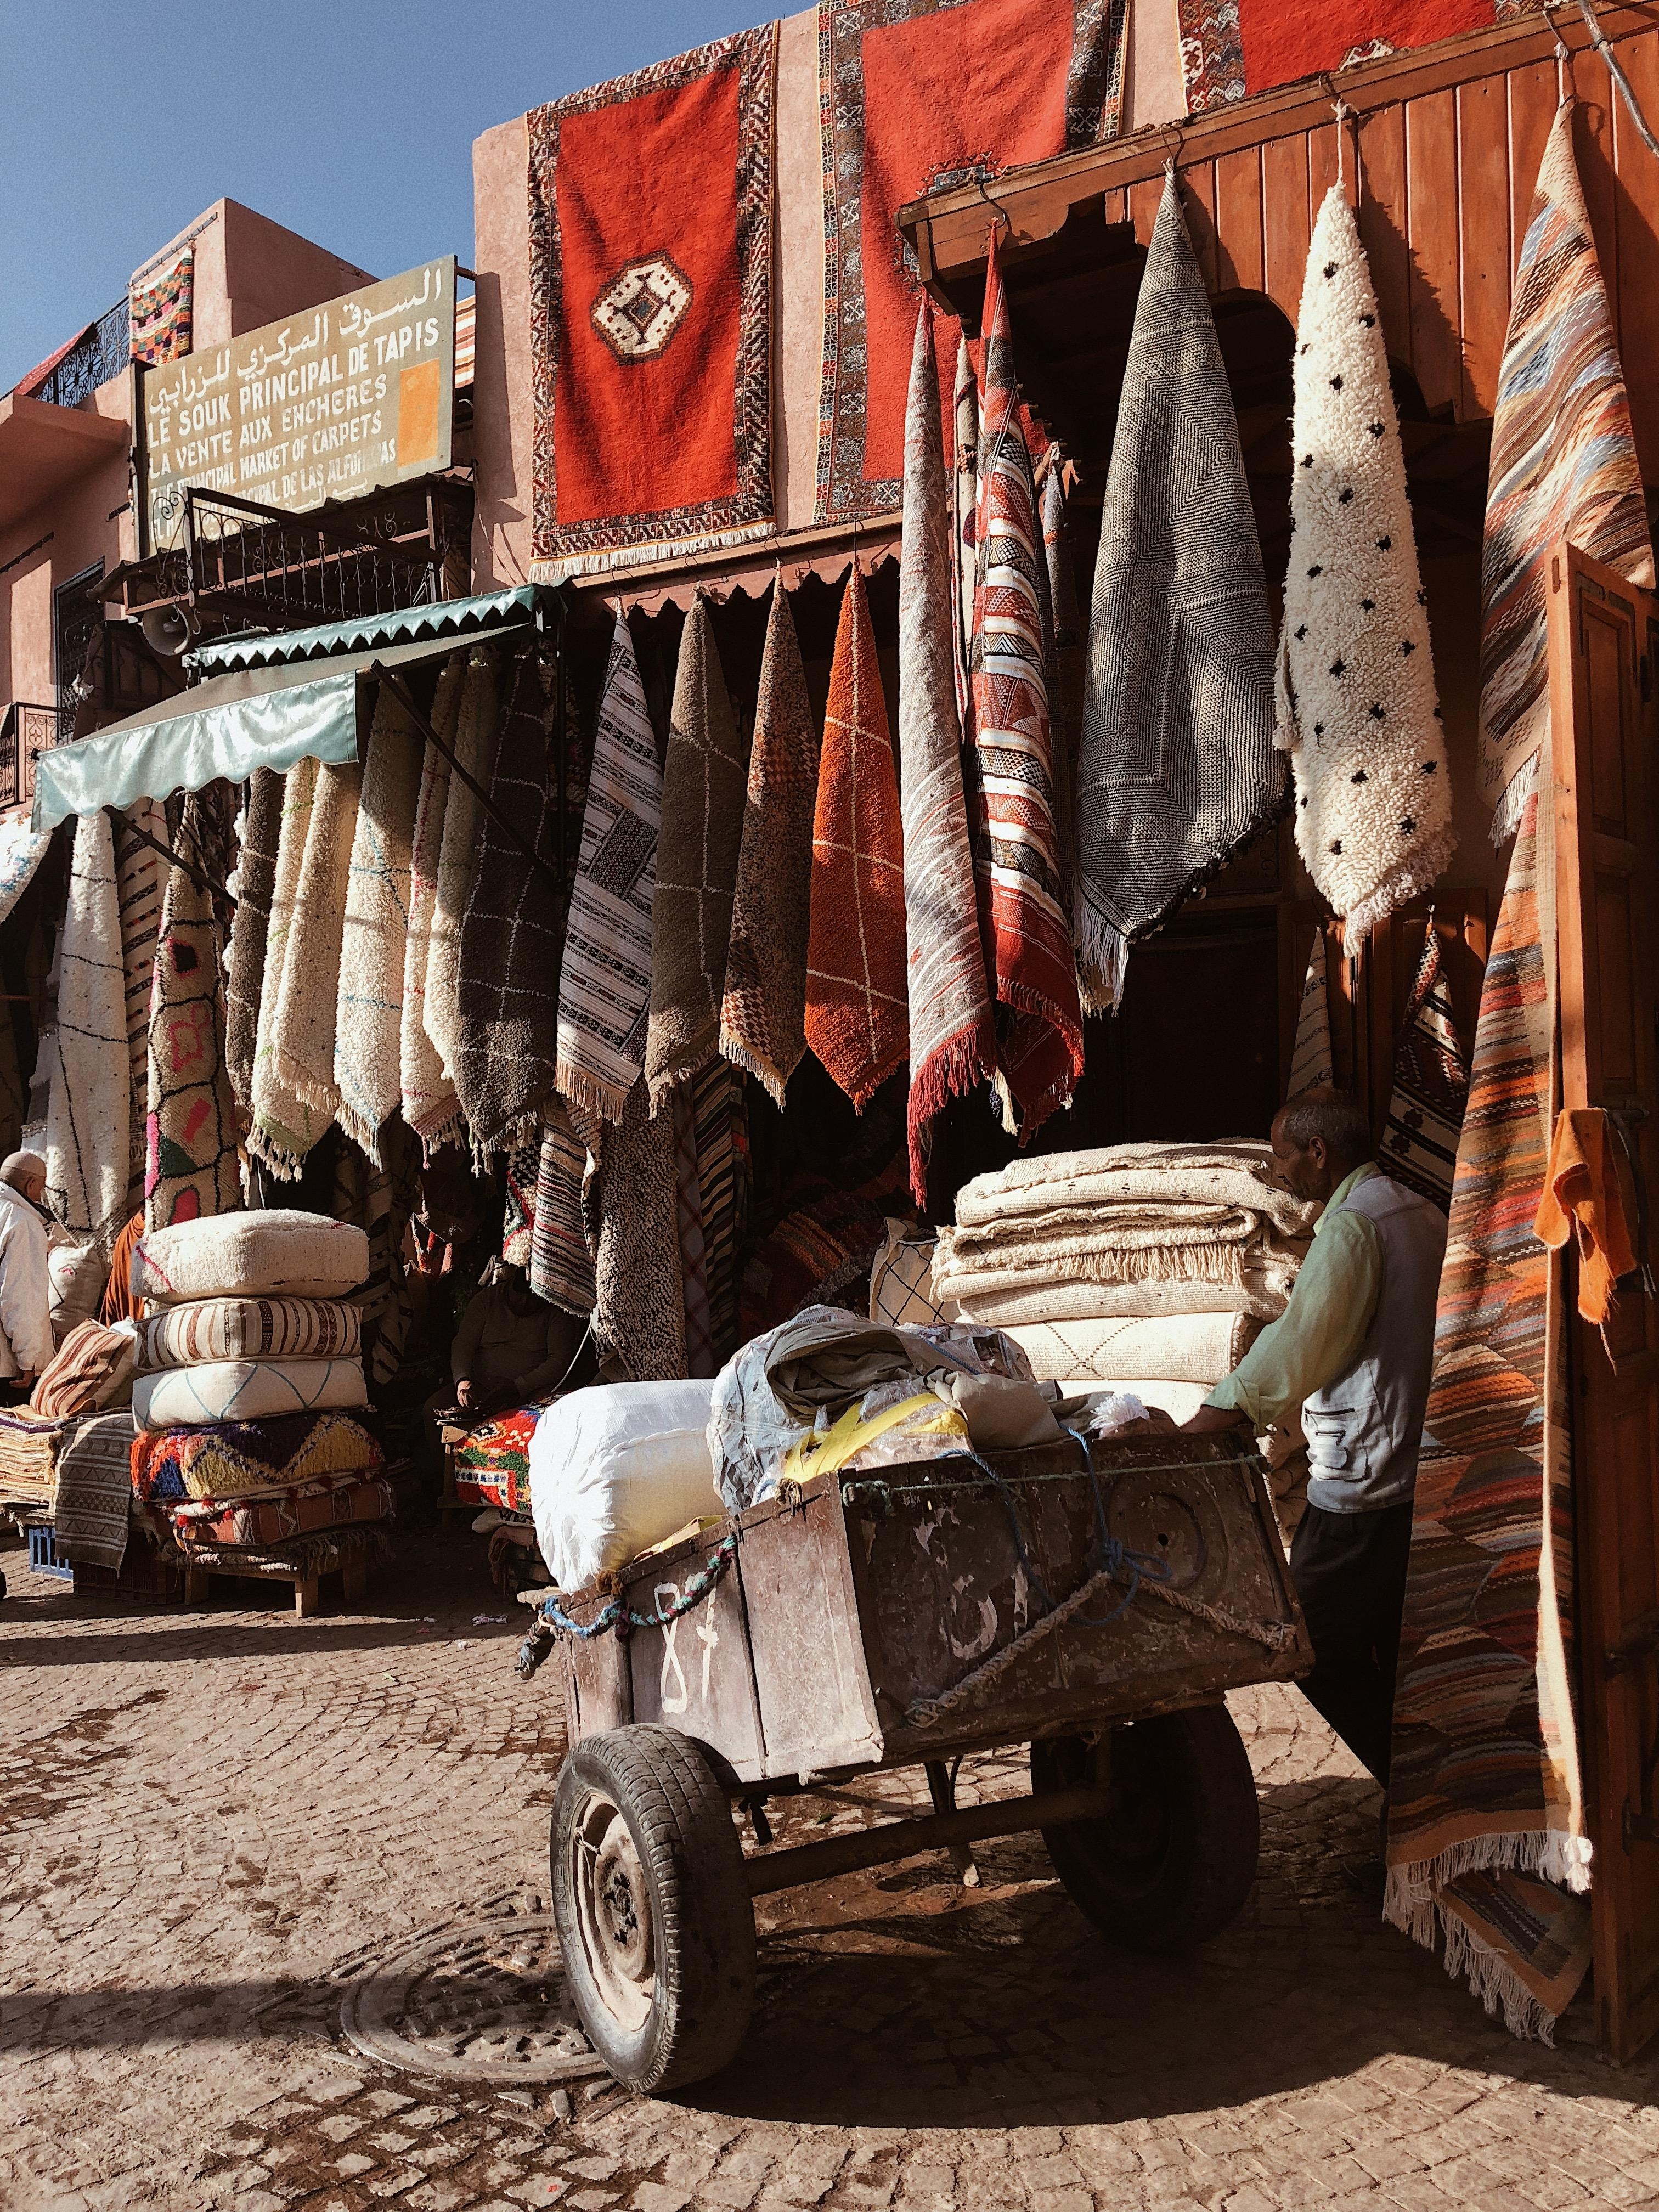 Marrakech #teppich #dreamland #linvingchallenge. Am liebsten hätte ich alle gekauft. Leider Zu wenig Platz und Geld 😂